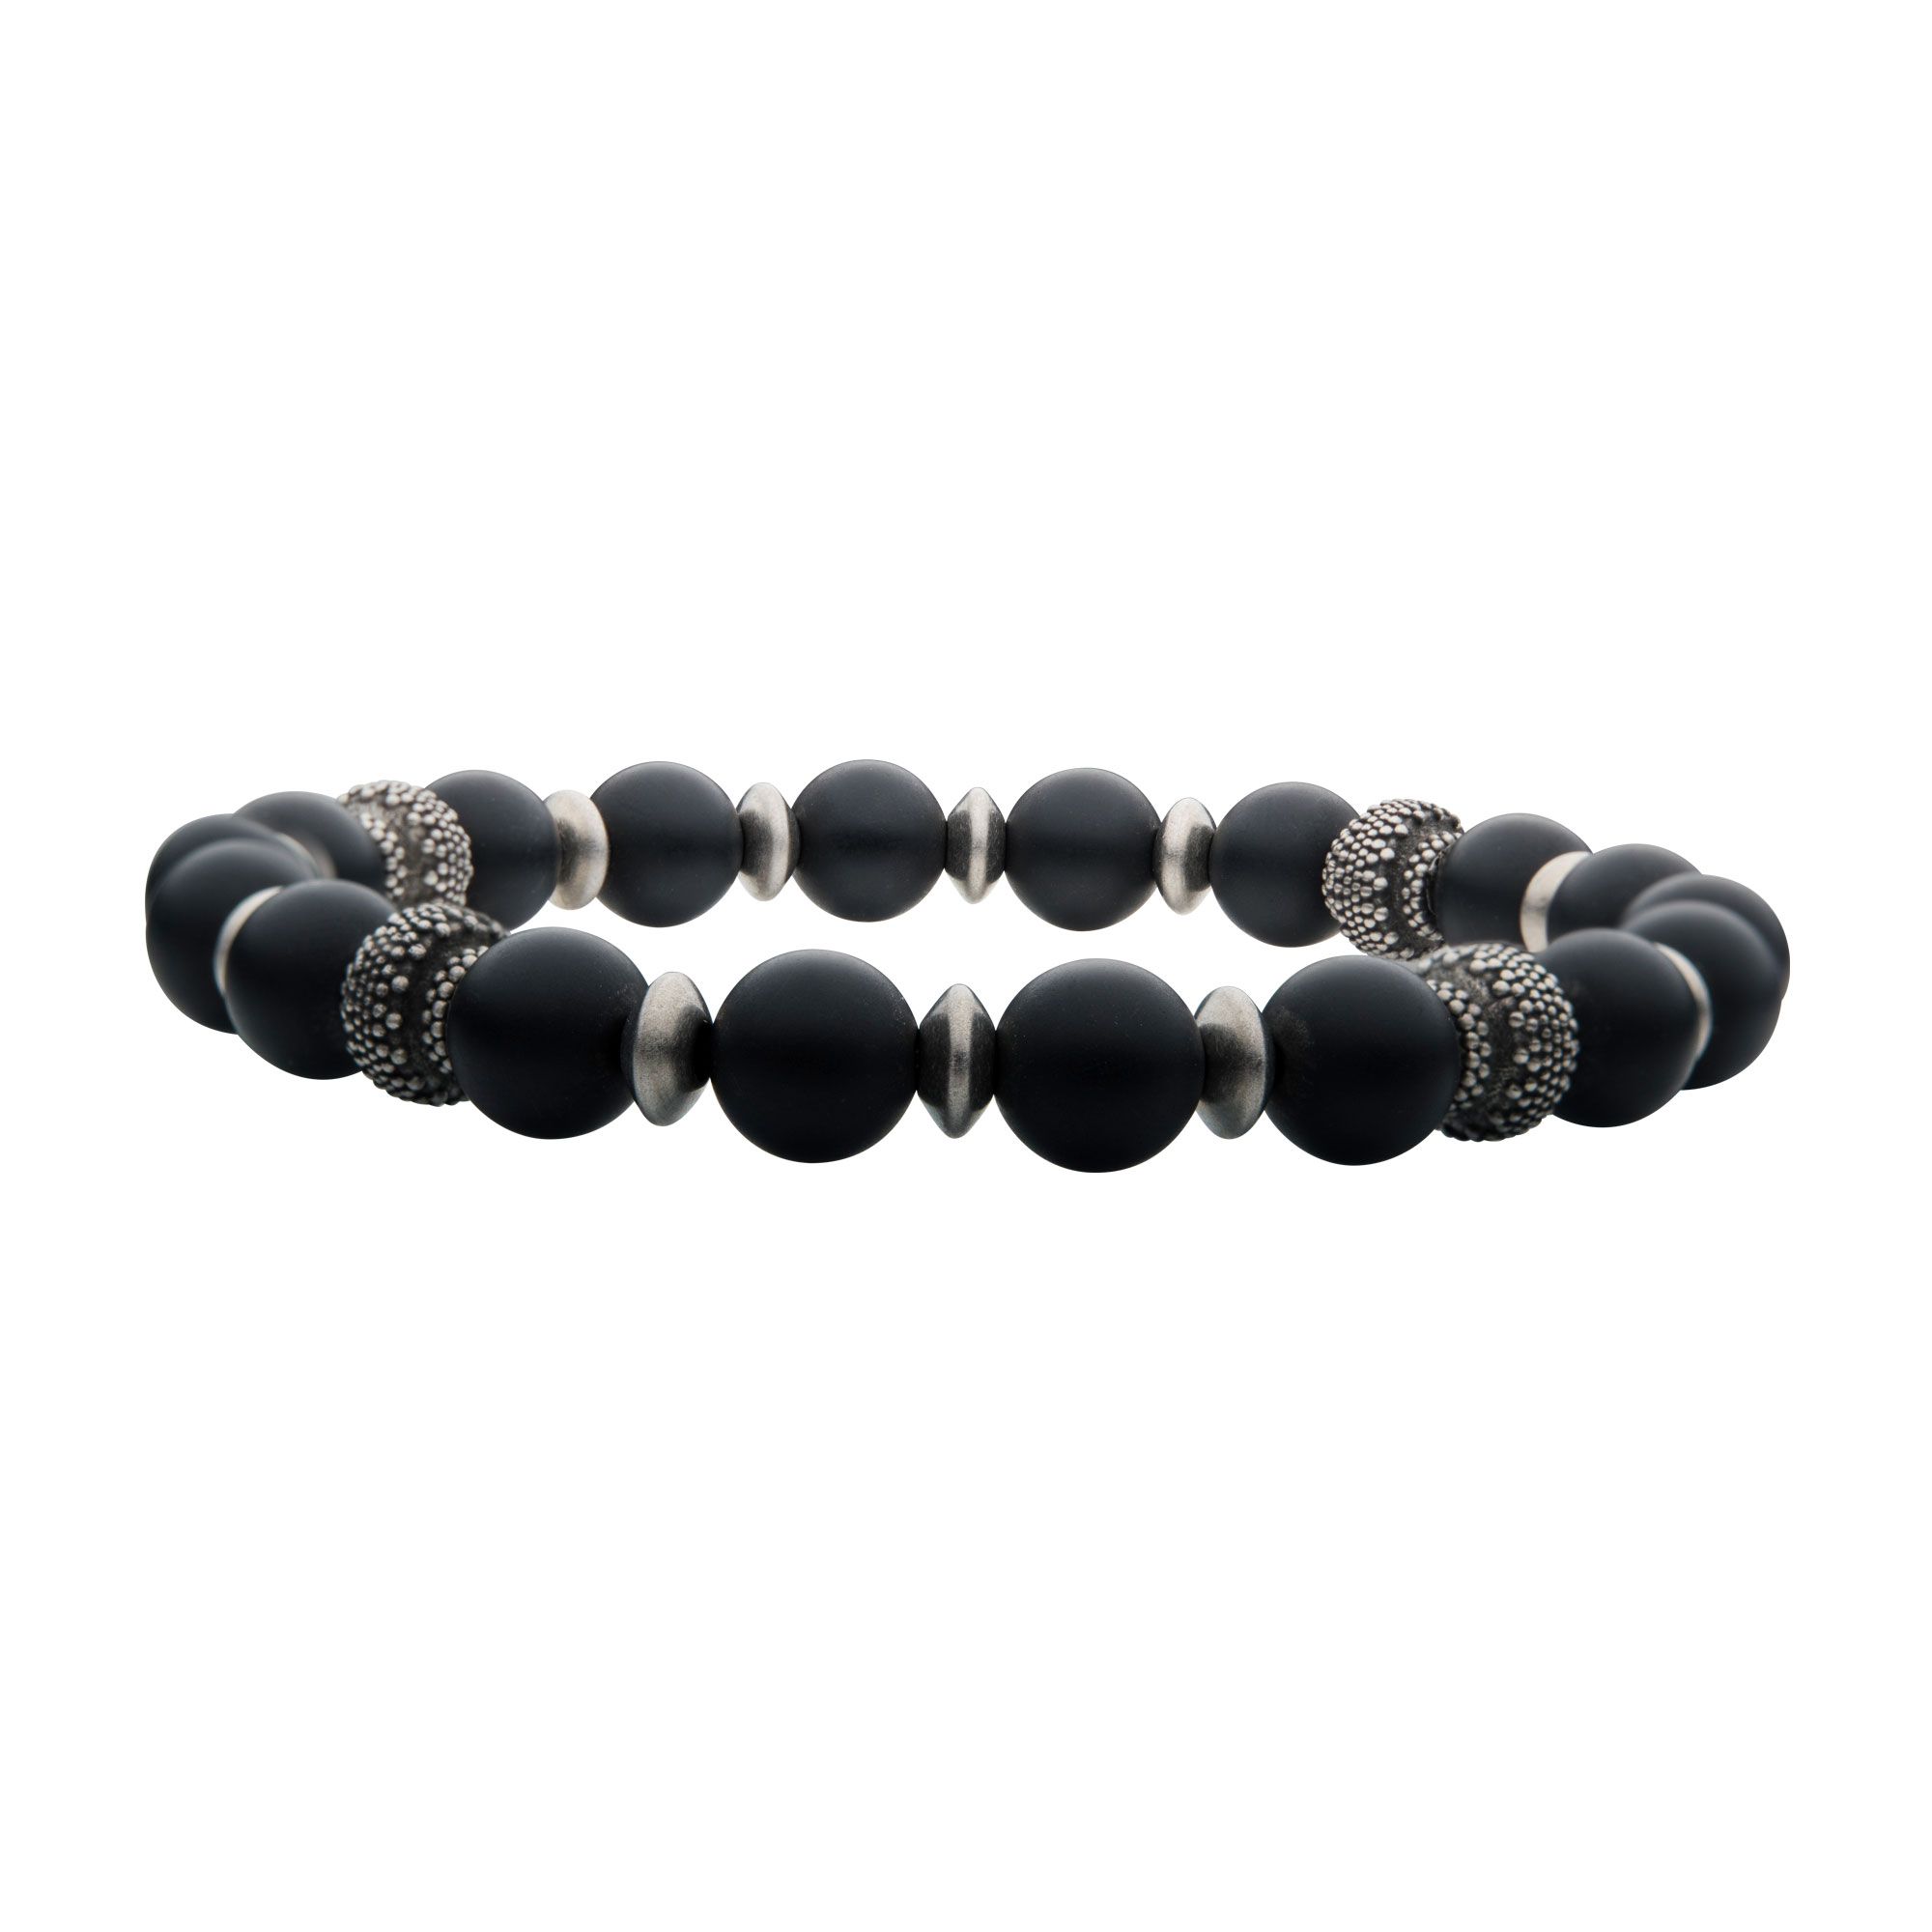 Matte Black Agate Stones with Black Oxidized Beads Bracelet Glatz Jewelry Aliquippa, PA